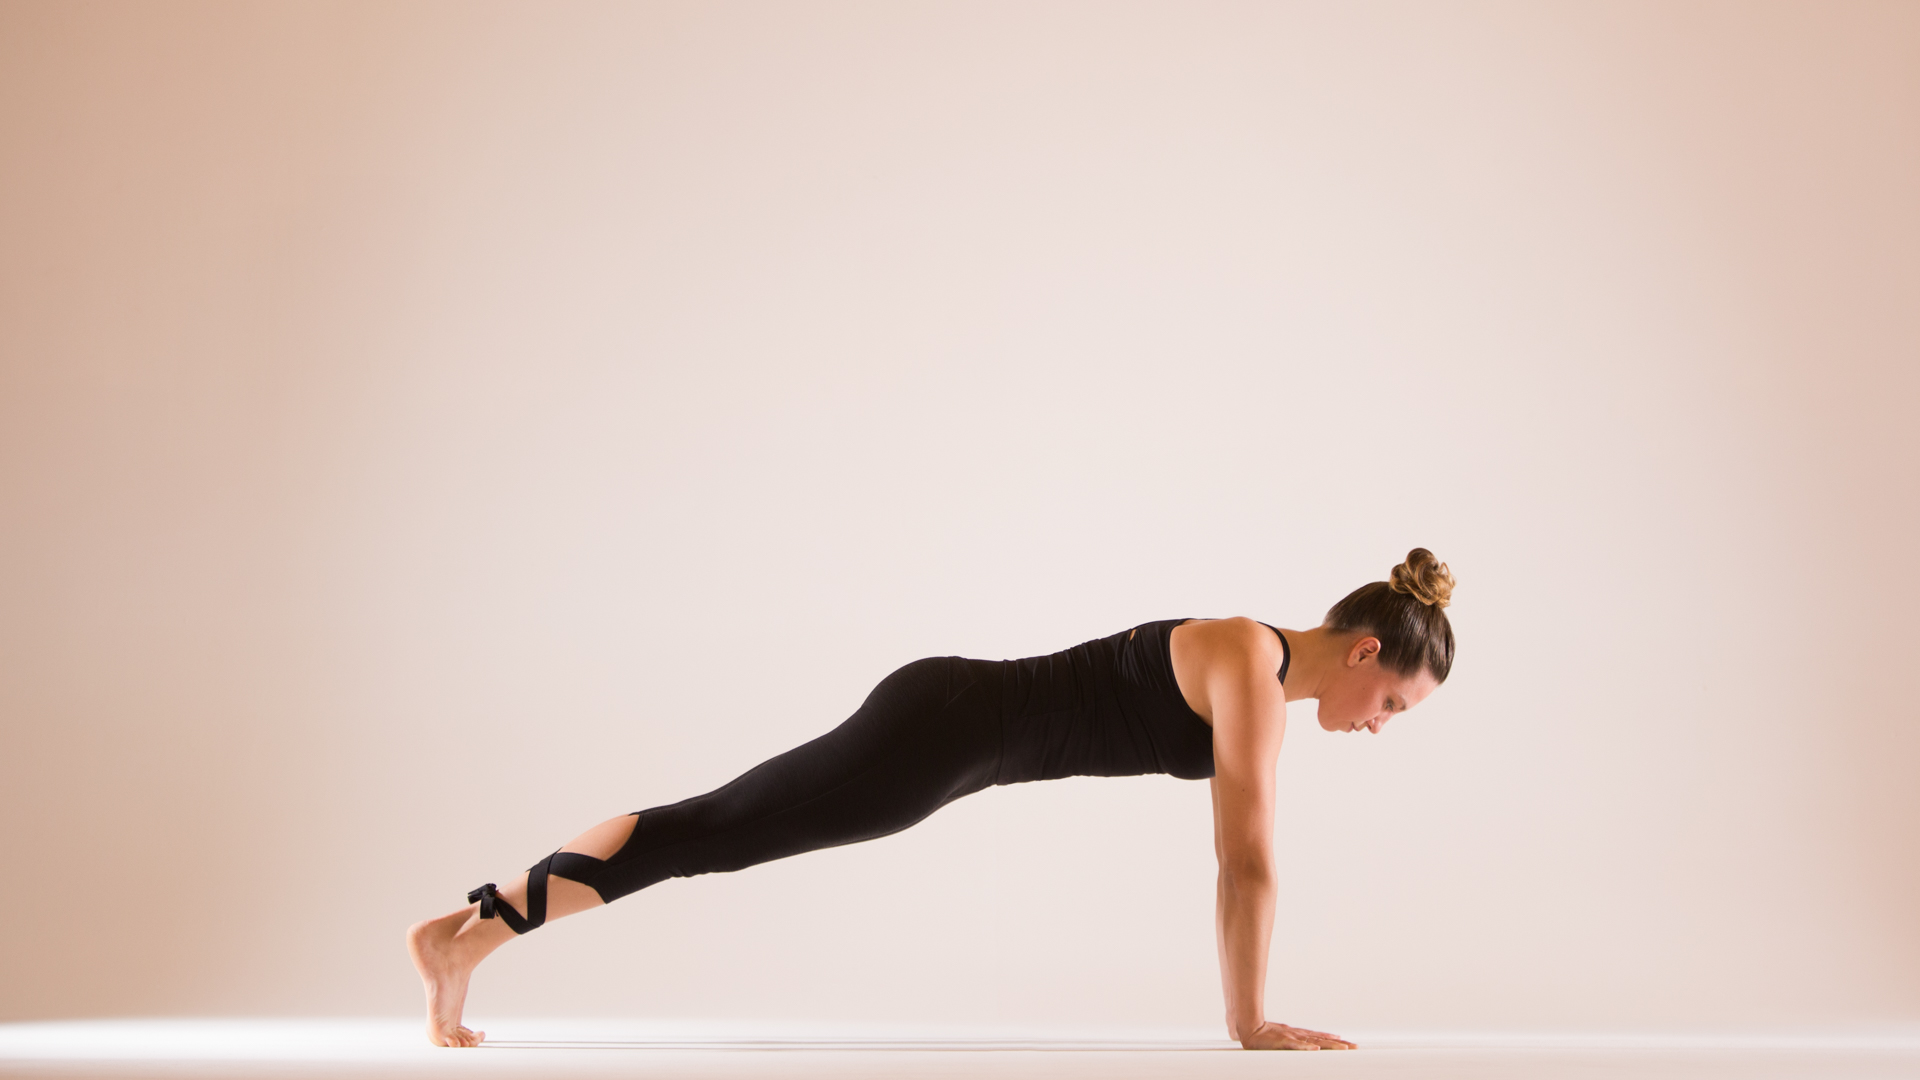 Plank Pose tác động lên toàn bộ cơ thể, đặc biệt là các cơ bắp ở cánh tay, vai, lưng và bụng.